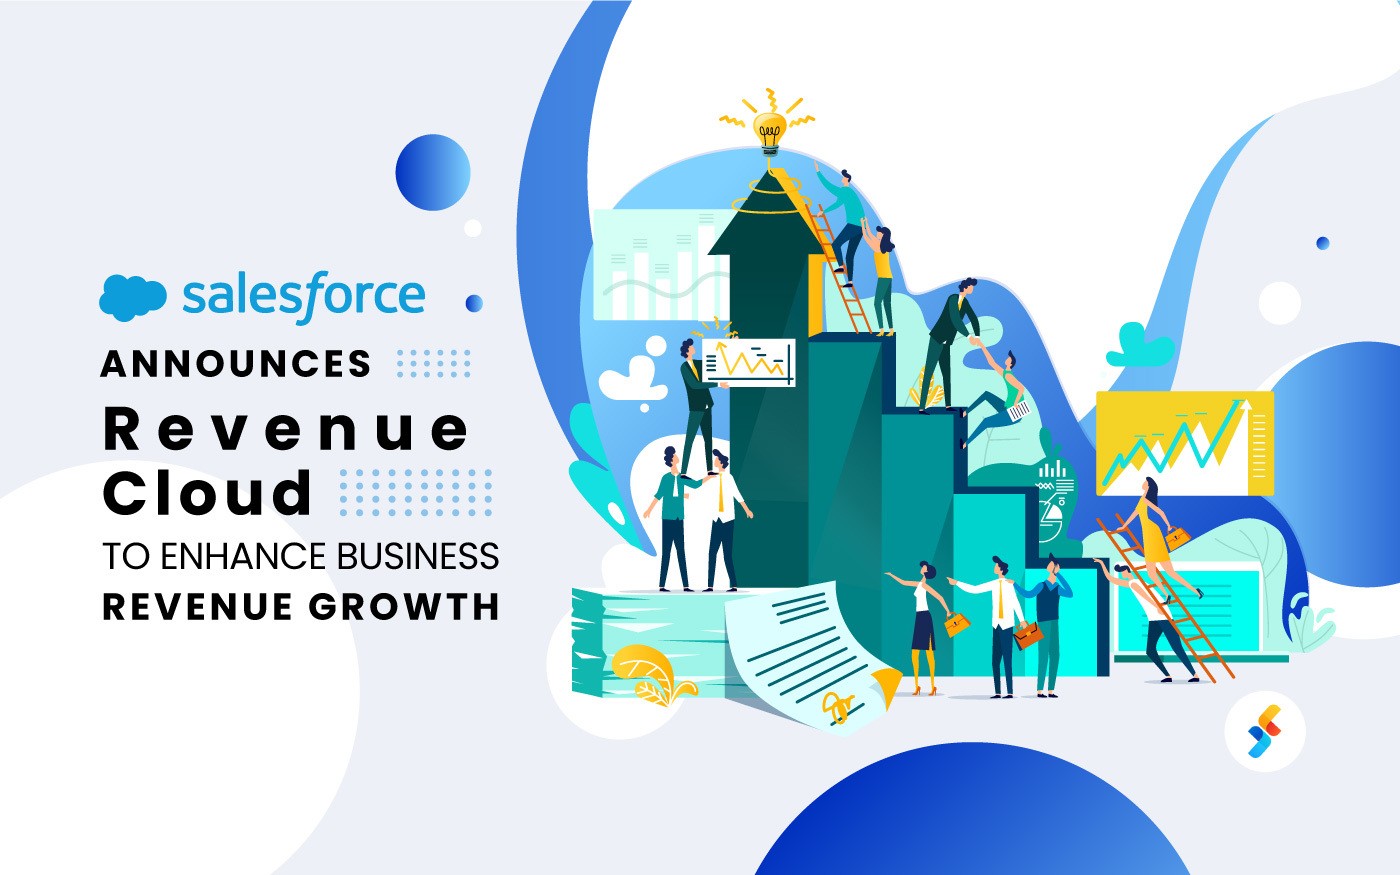 Salesforce Announces Revenue Cloud to Enhance Business Revenue Growth